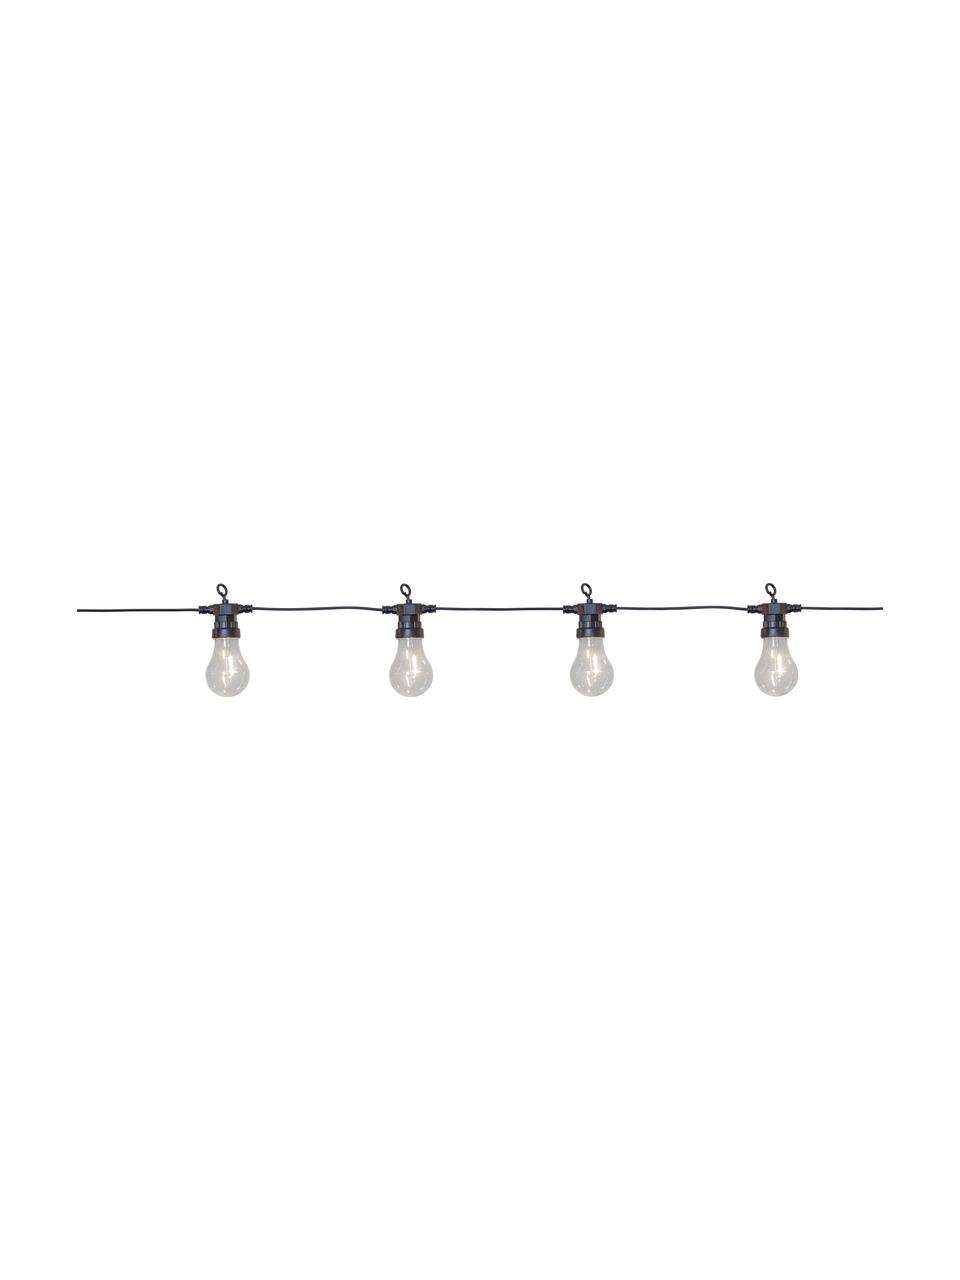 Guirlande lumineuse LED Circus, 405 cm, 10 ampoules, Noir, transparent, long. 405 cm